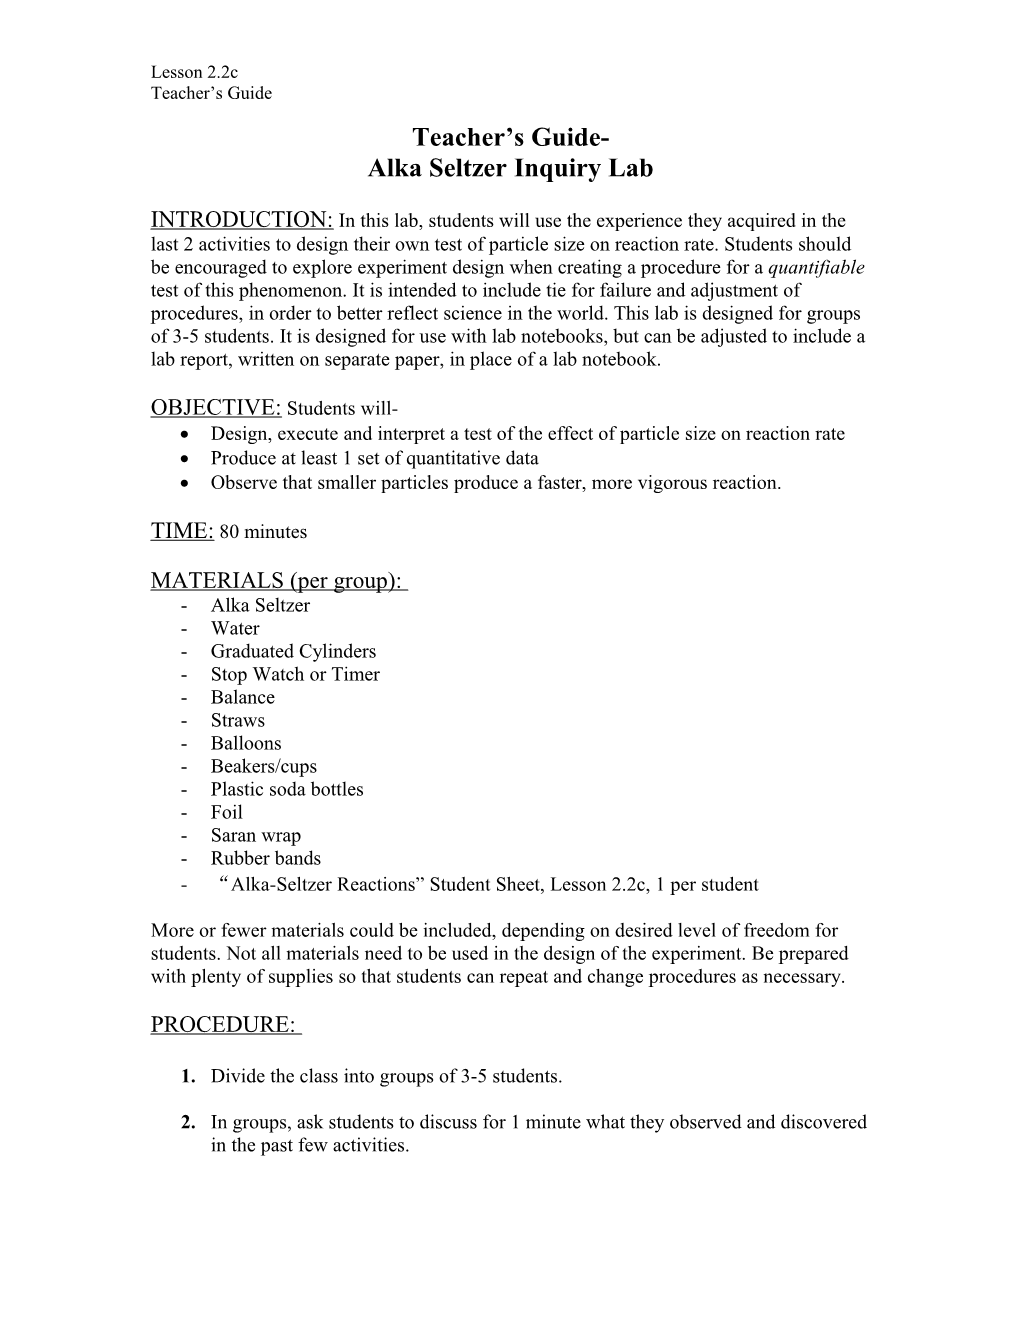 Alka Seltzer Inquiry Lab